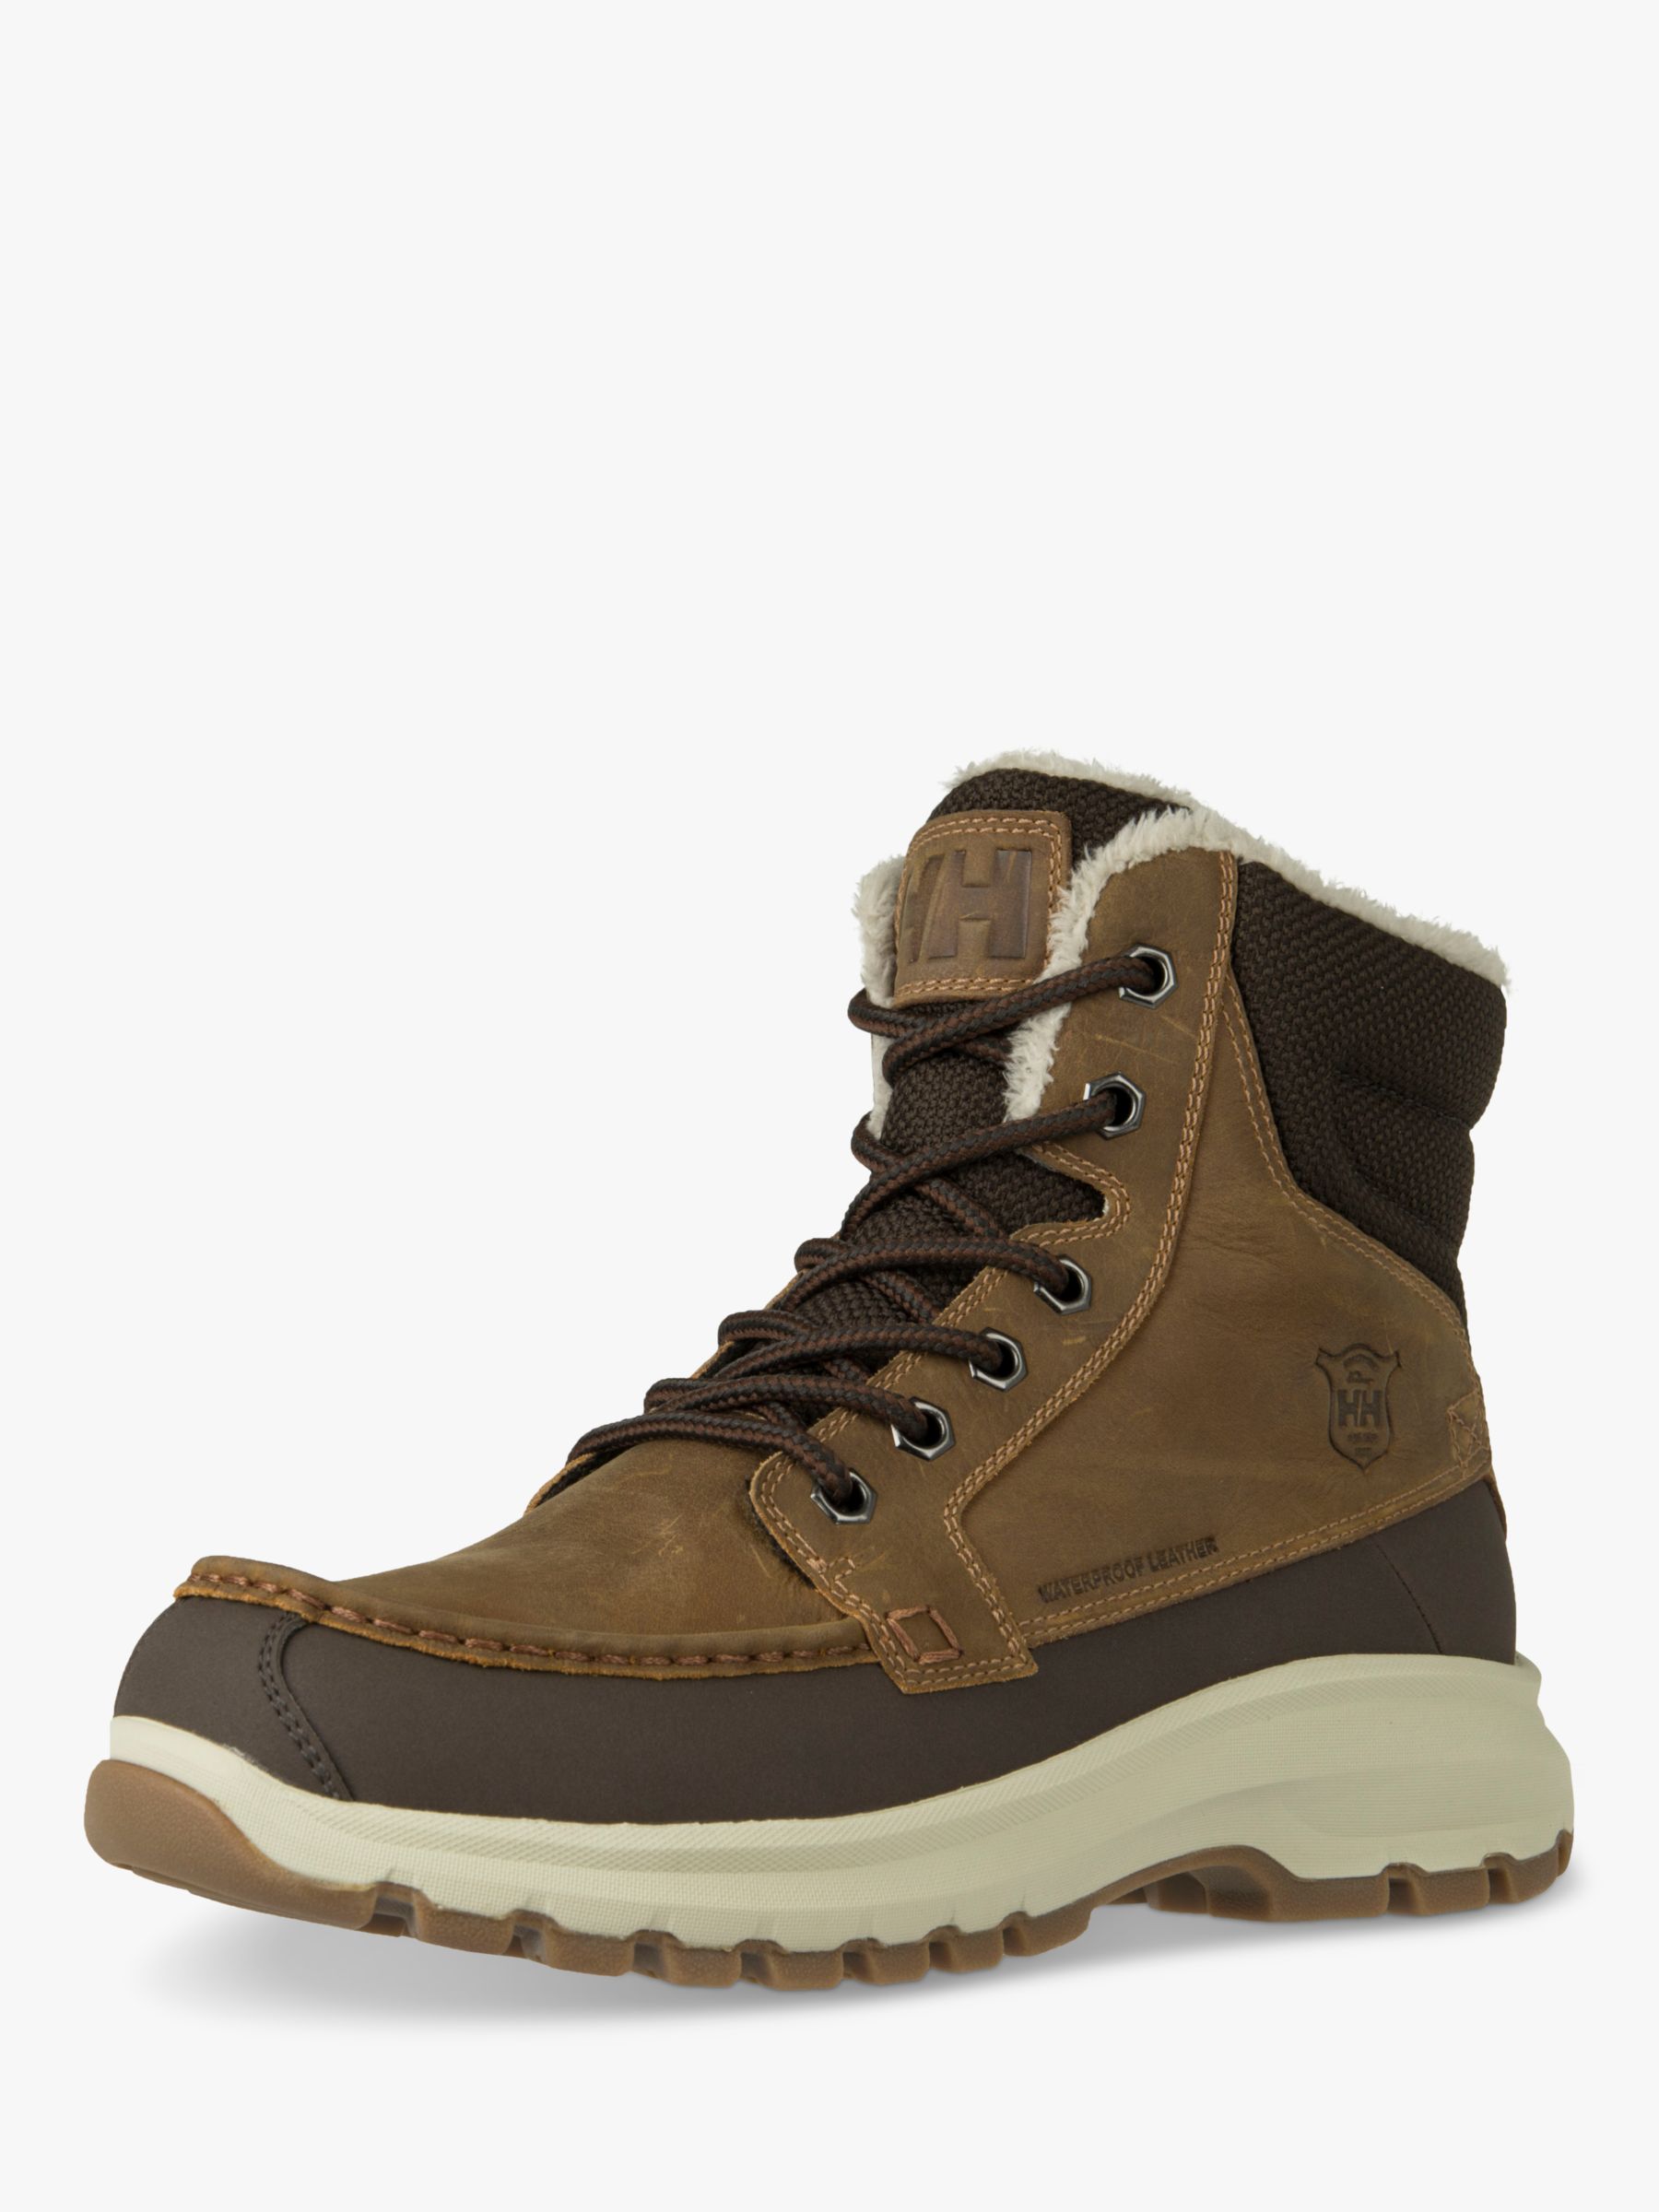 Buy Helly Hansen Garibaldi V3 Men's Waterproof Walking Boots Online at johnlewis.com